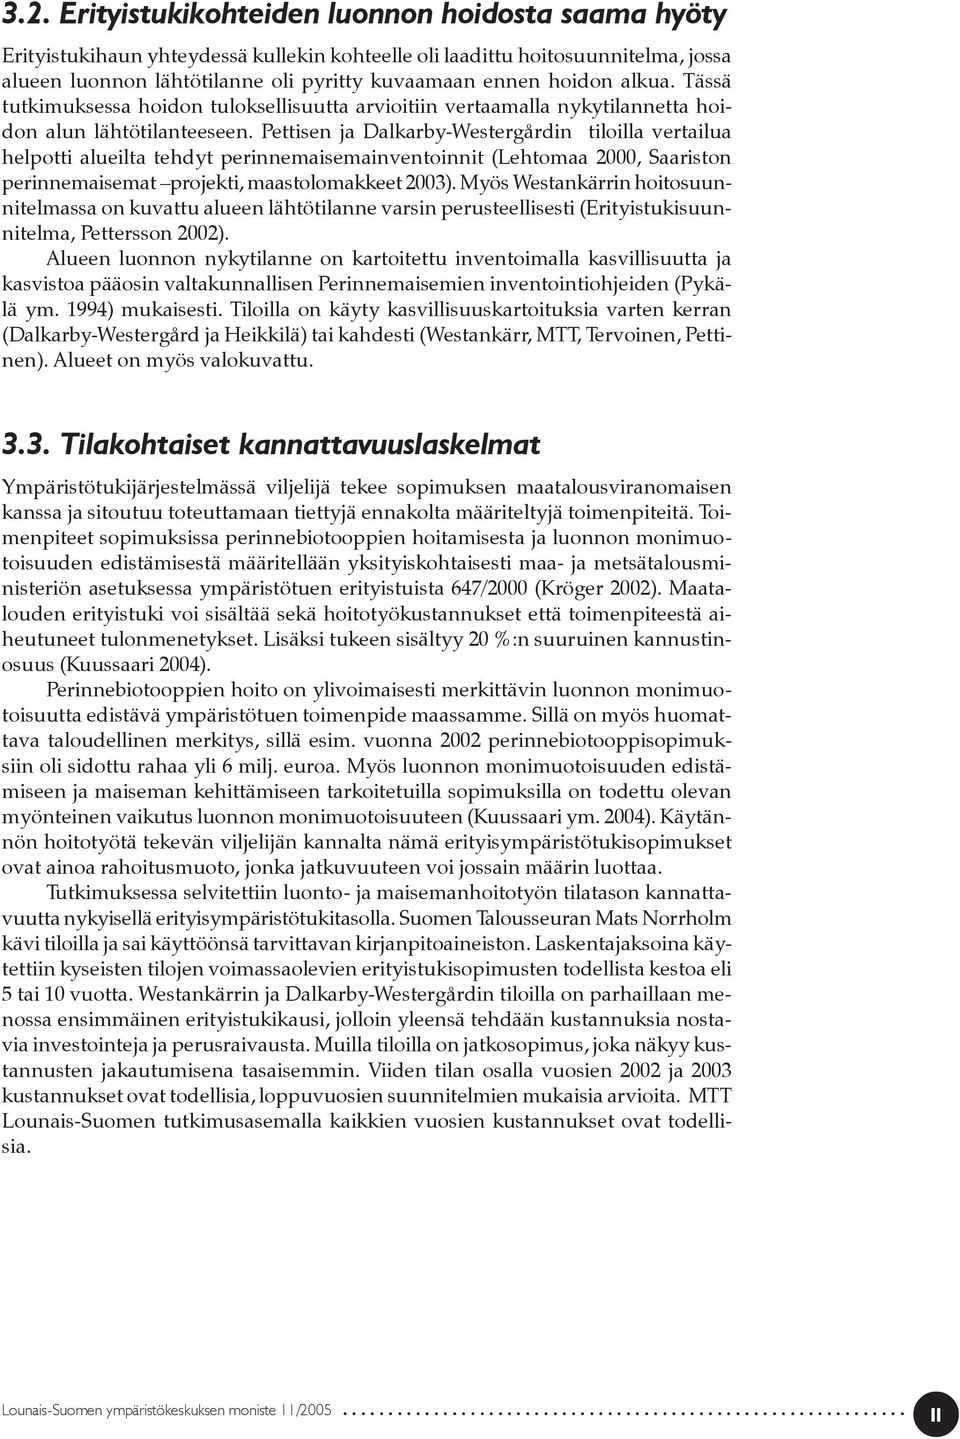 Pettisen ja Dalkarby-Westergårdin tiloilla vertailua helpotti alueilta tehdyt perinnemaisemainventoinnit (Lehtomaa 2000, Saariston perinnemaisemat projekti, maastolomakkeet 2003).